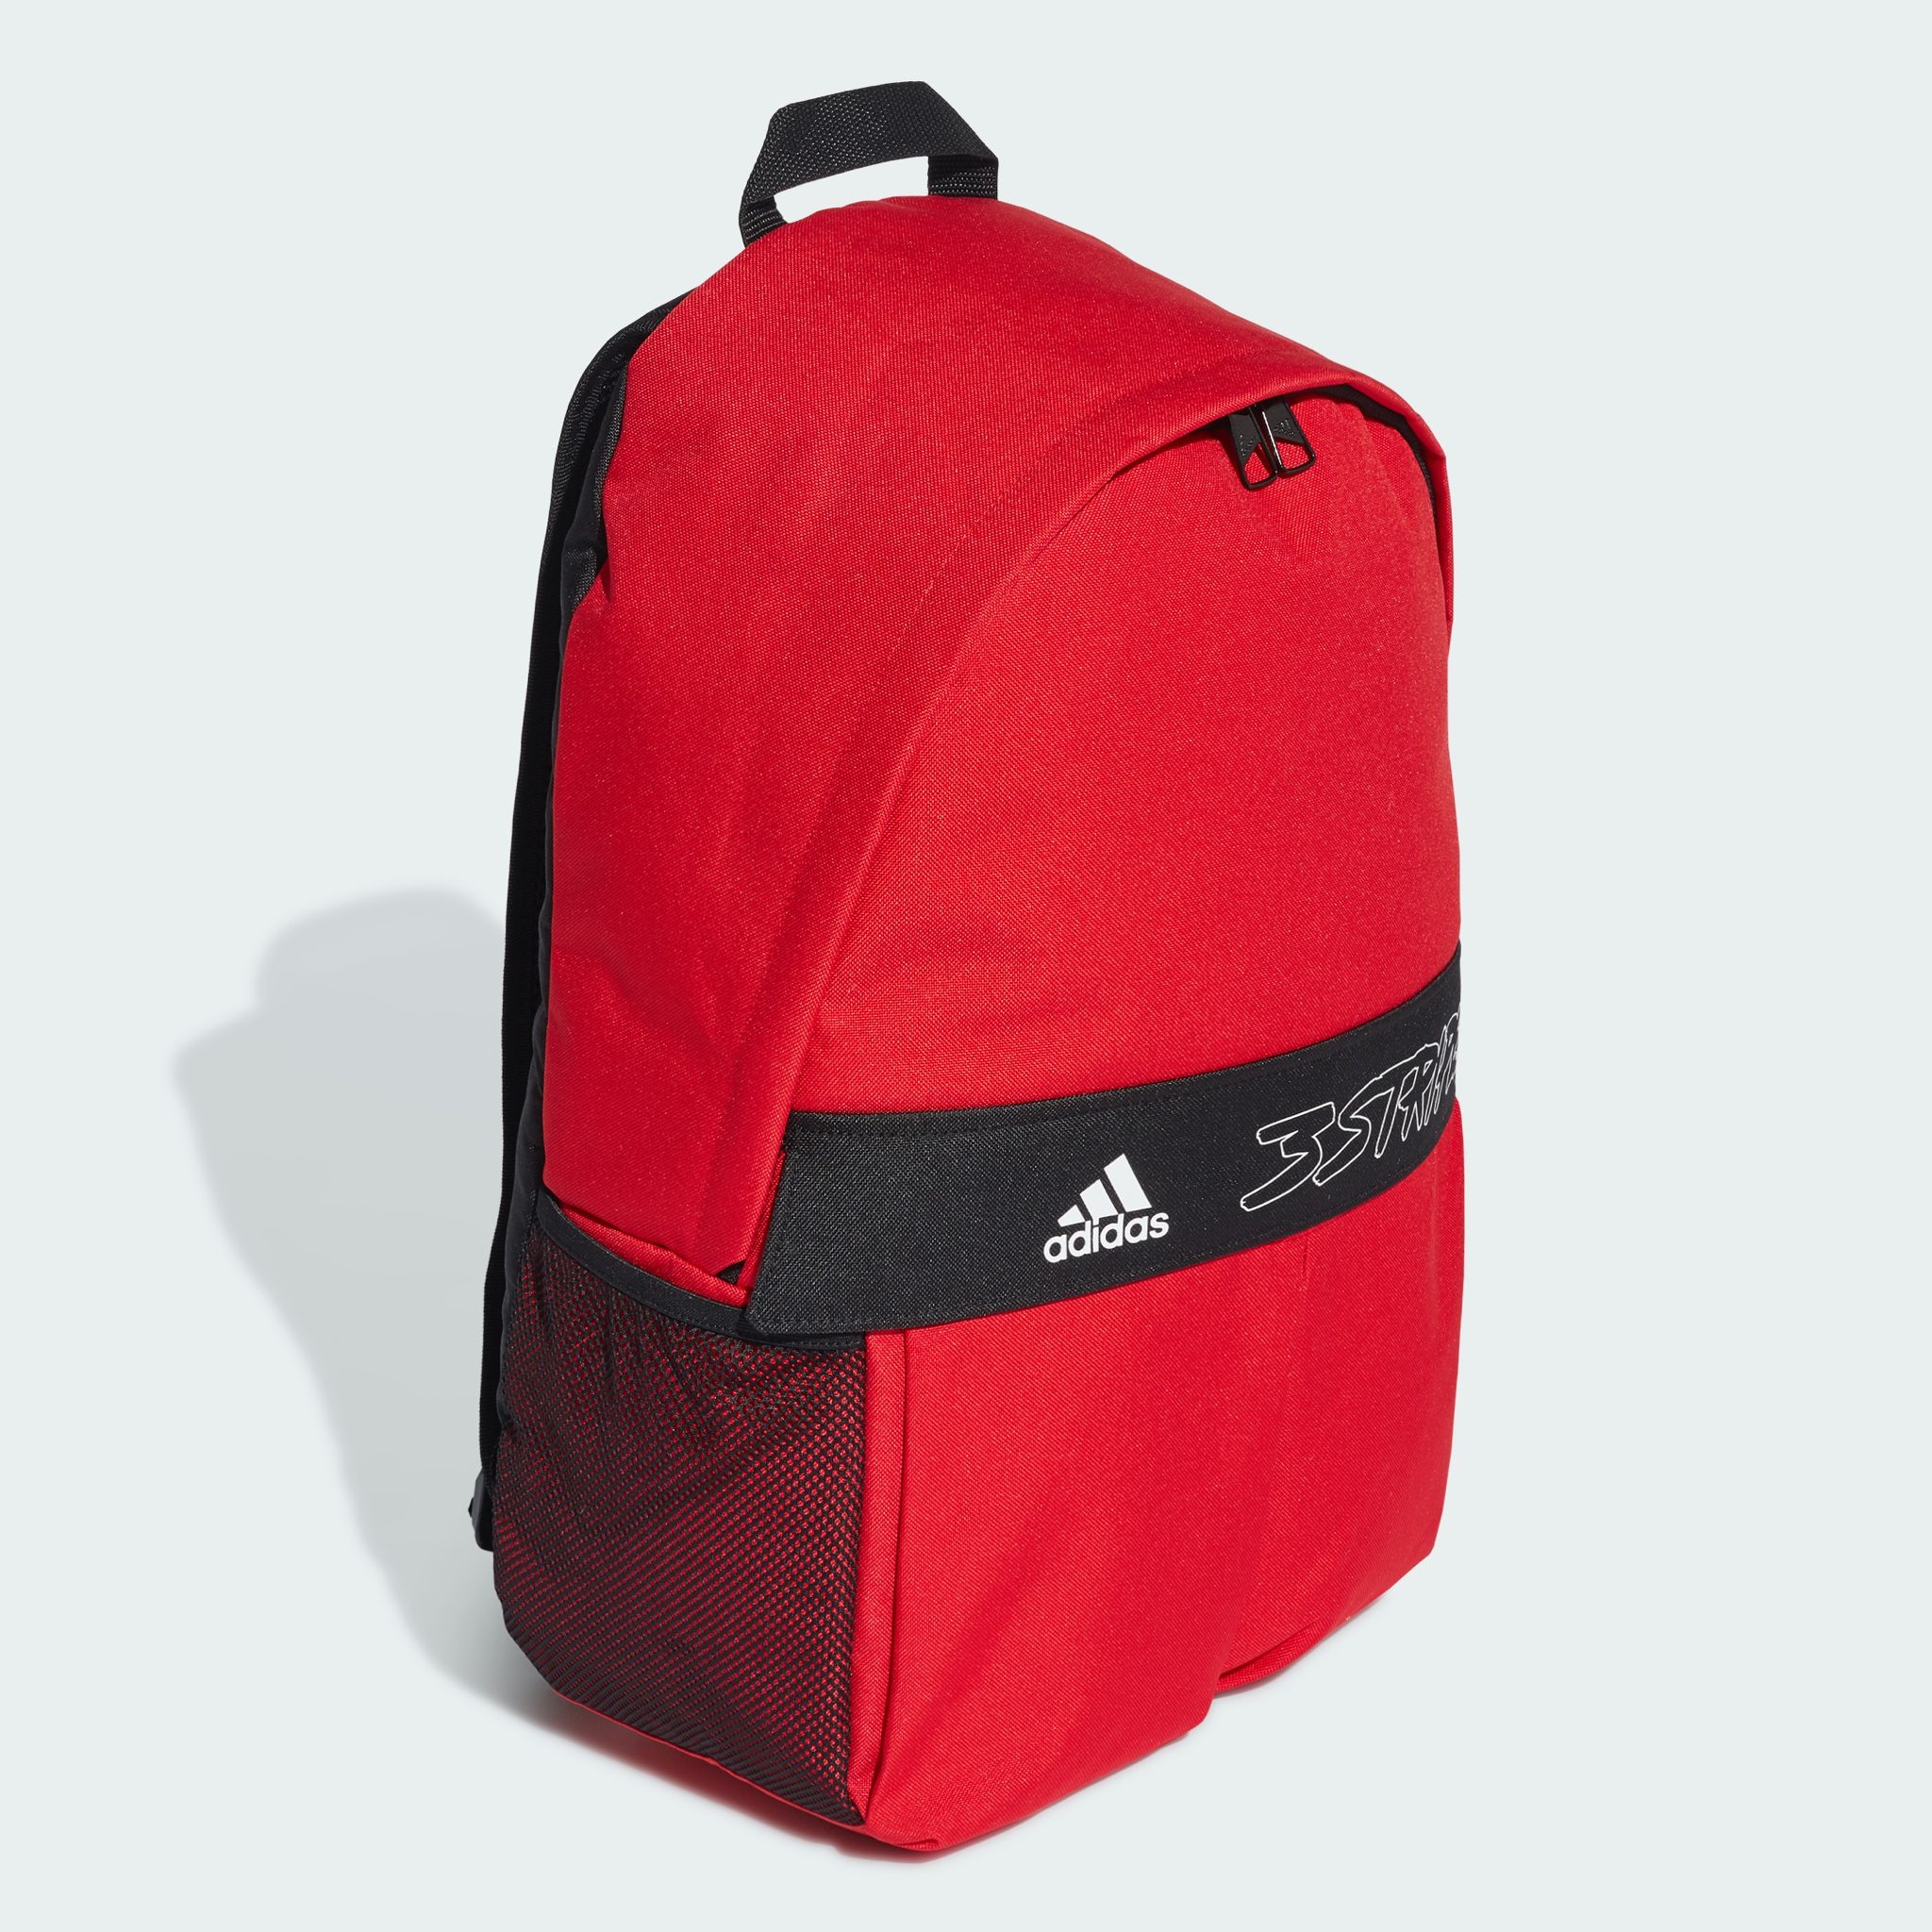 Adidas Red Backpacks | Mercari